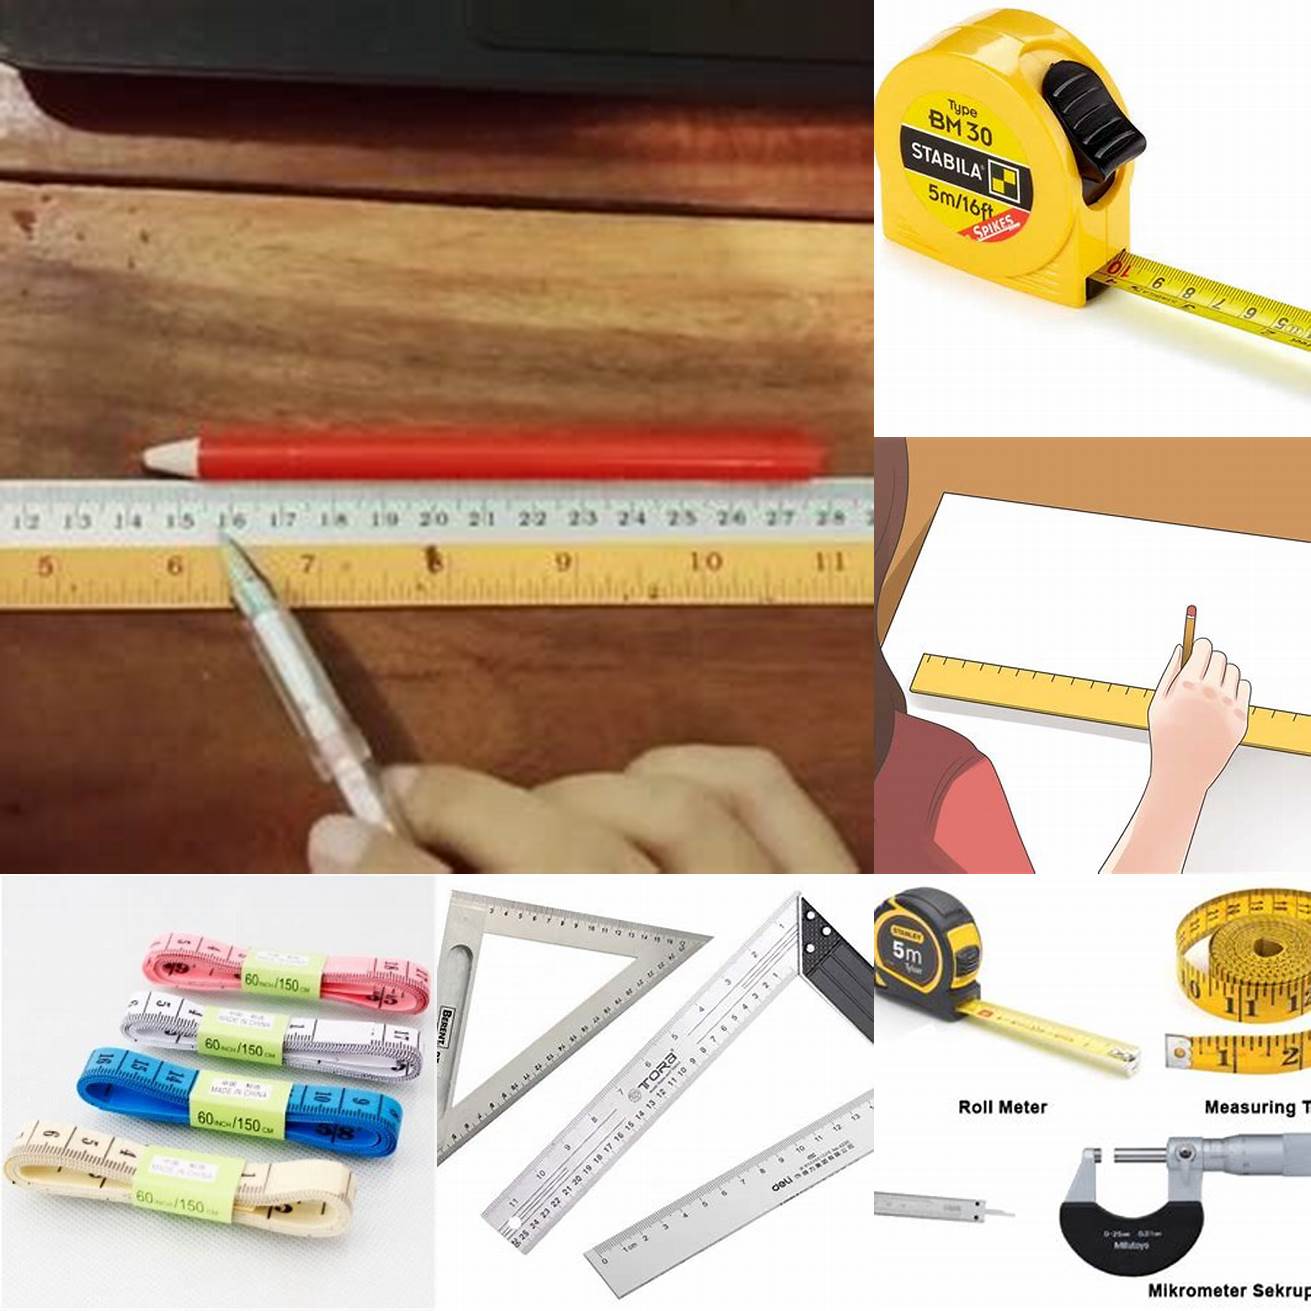 Gunakan penggaris untuk mengukur panjang benang atau pita yang telah Anda tandai